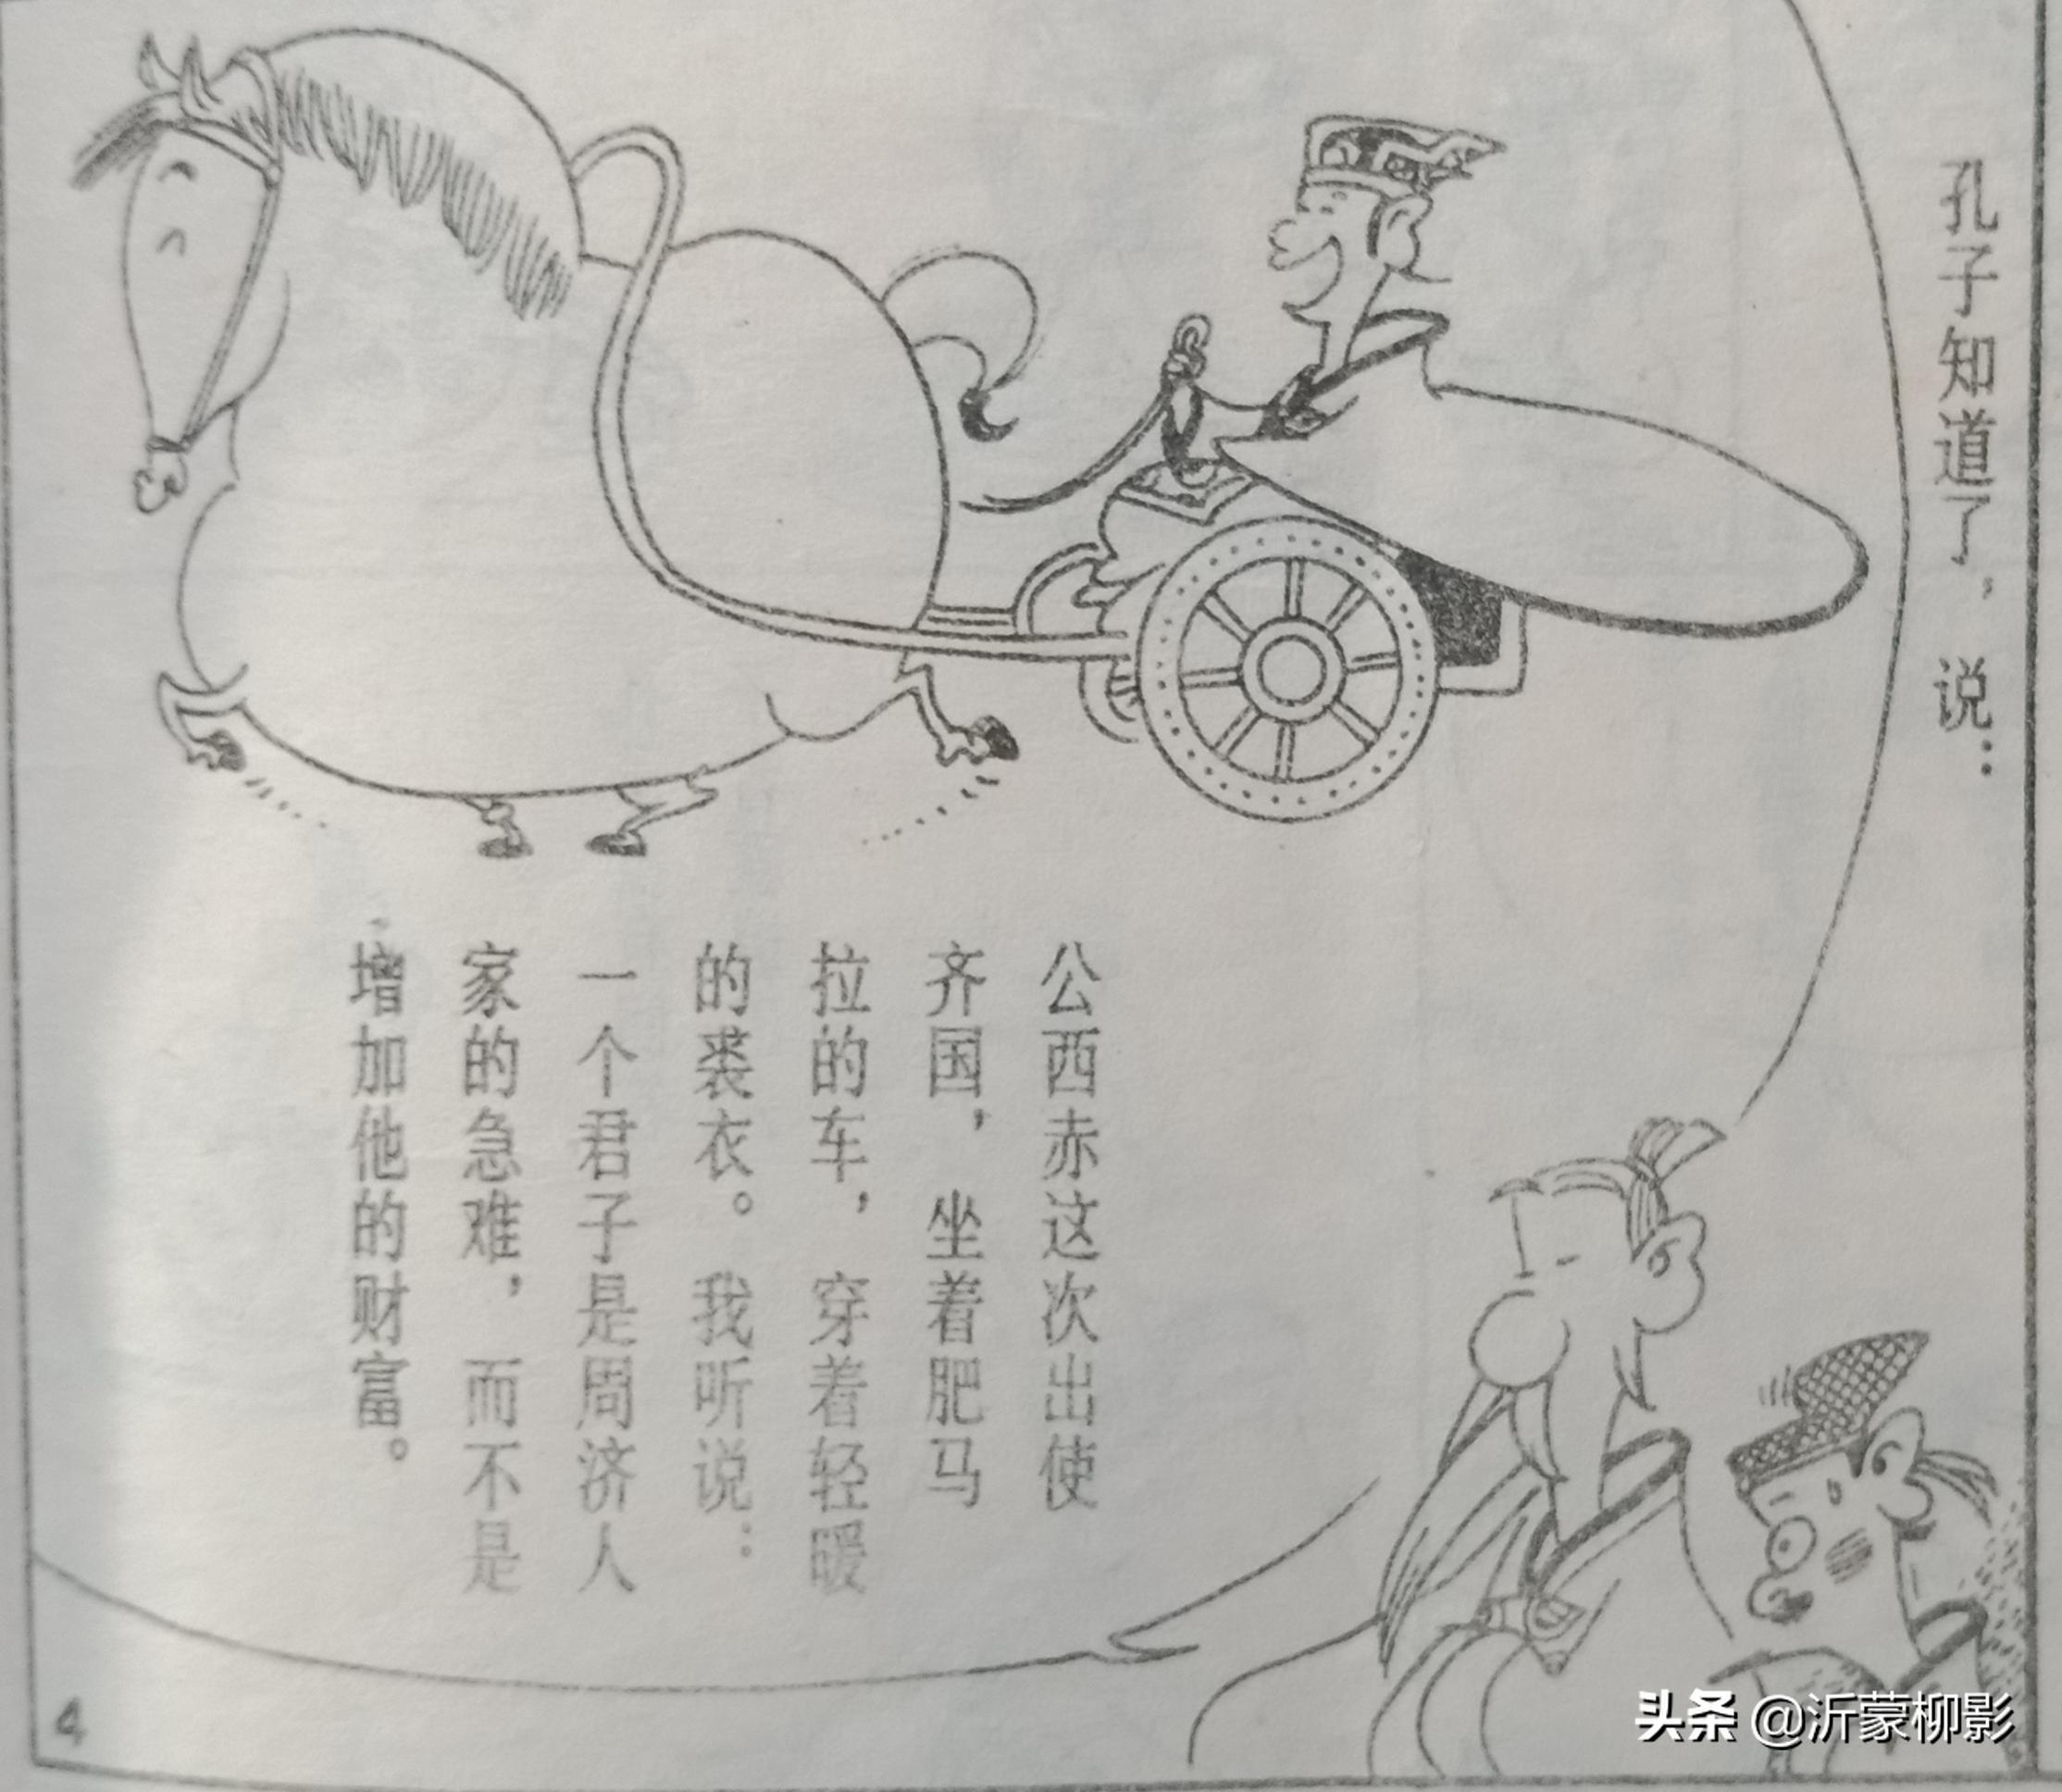 孔子 论语 与蔡志忠漫画 孔子说 一起读 相得益彰且生动有趣 资讯咖